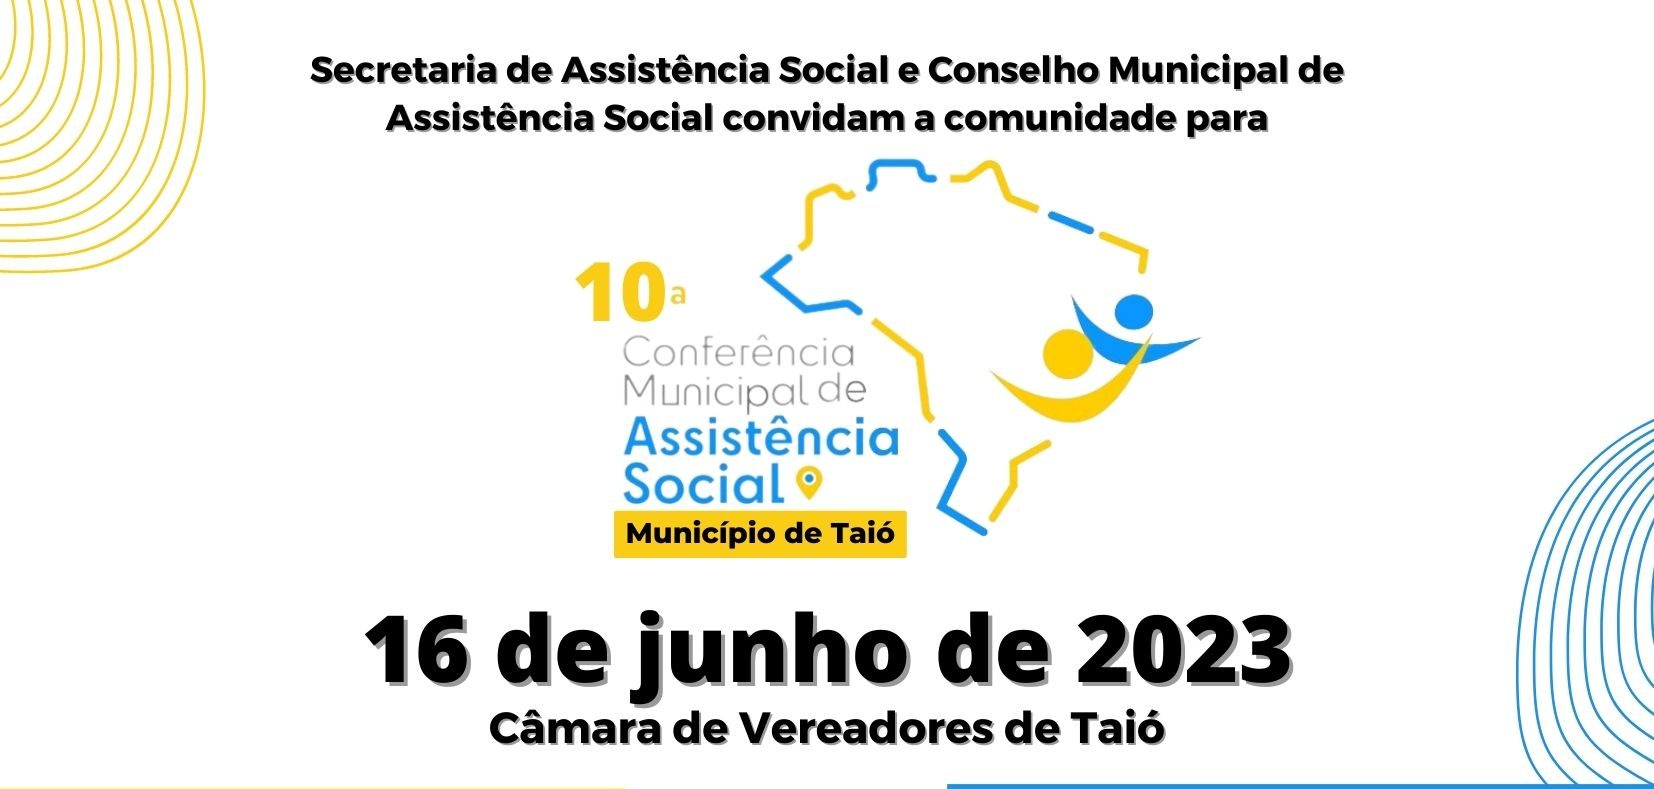 X Conferência Municipal de Assistência Social acontecerá em junho em Taió